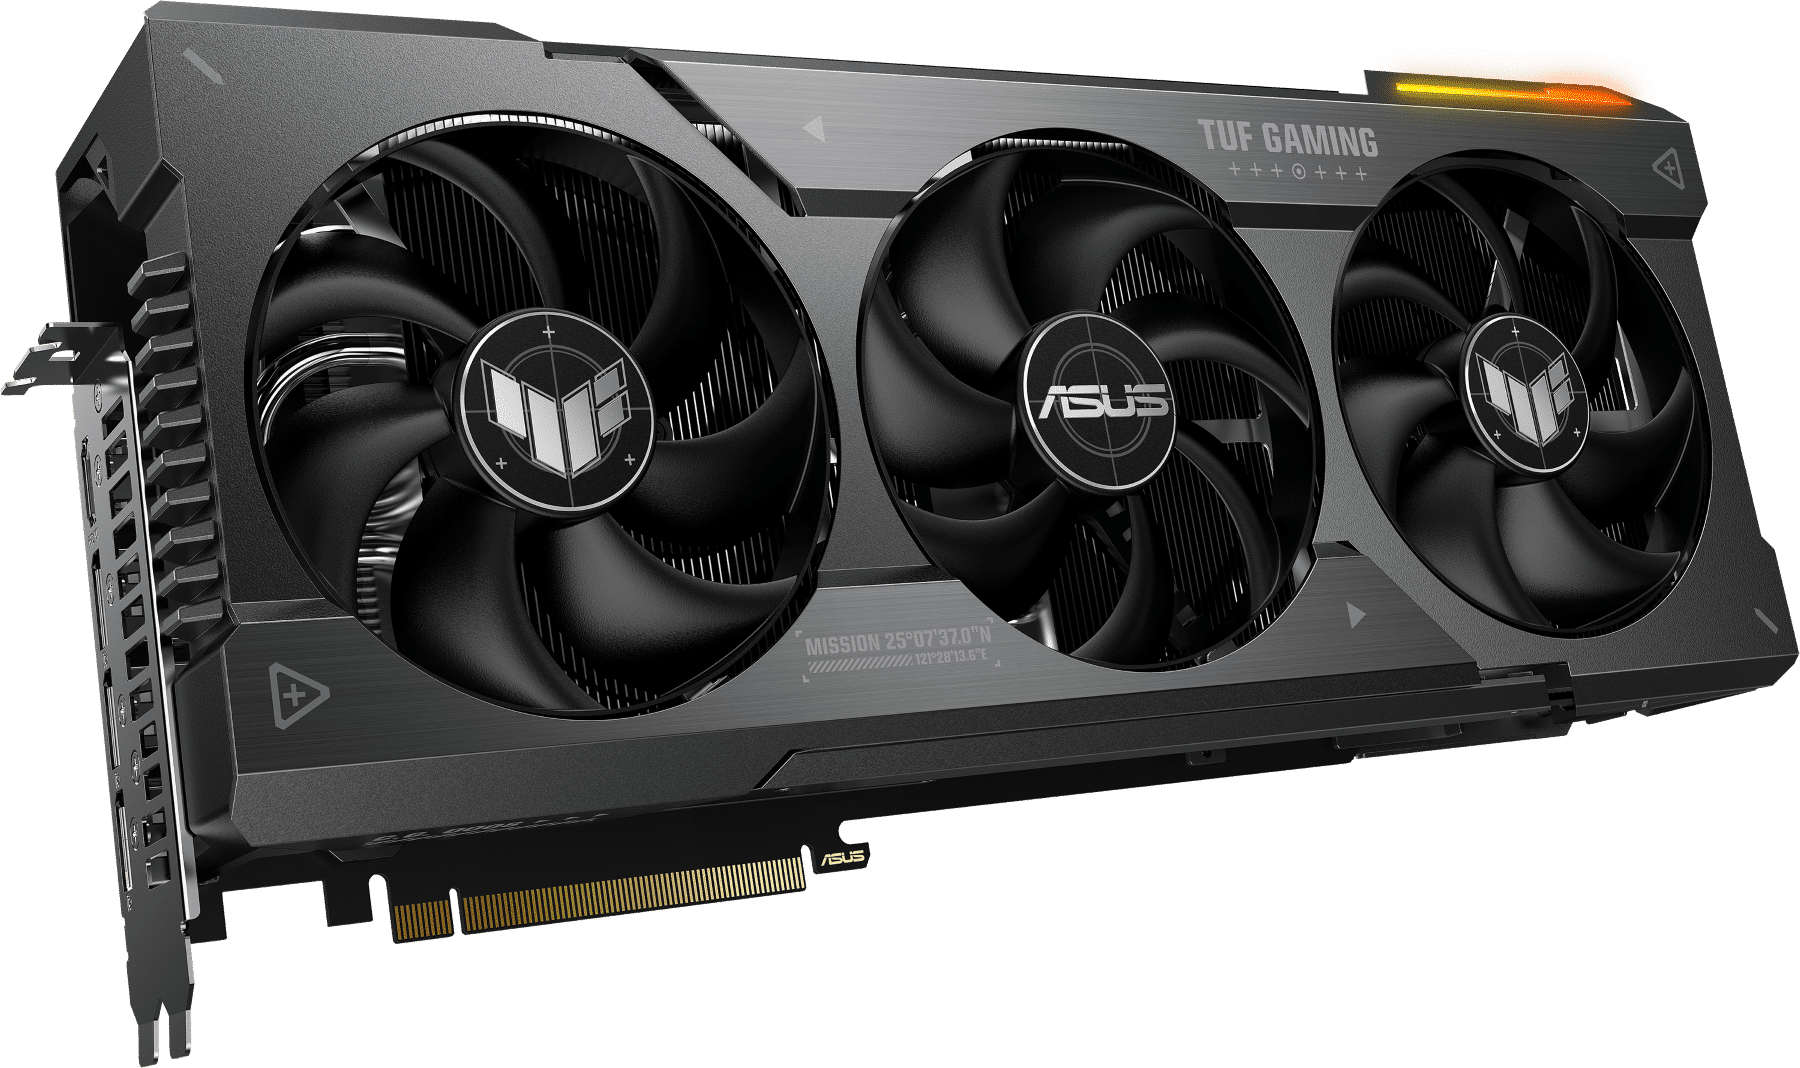 ASUS Announces TUF Gaming Radeon RX 7900 Series GPUs 33